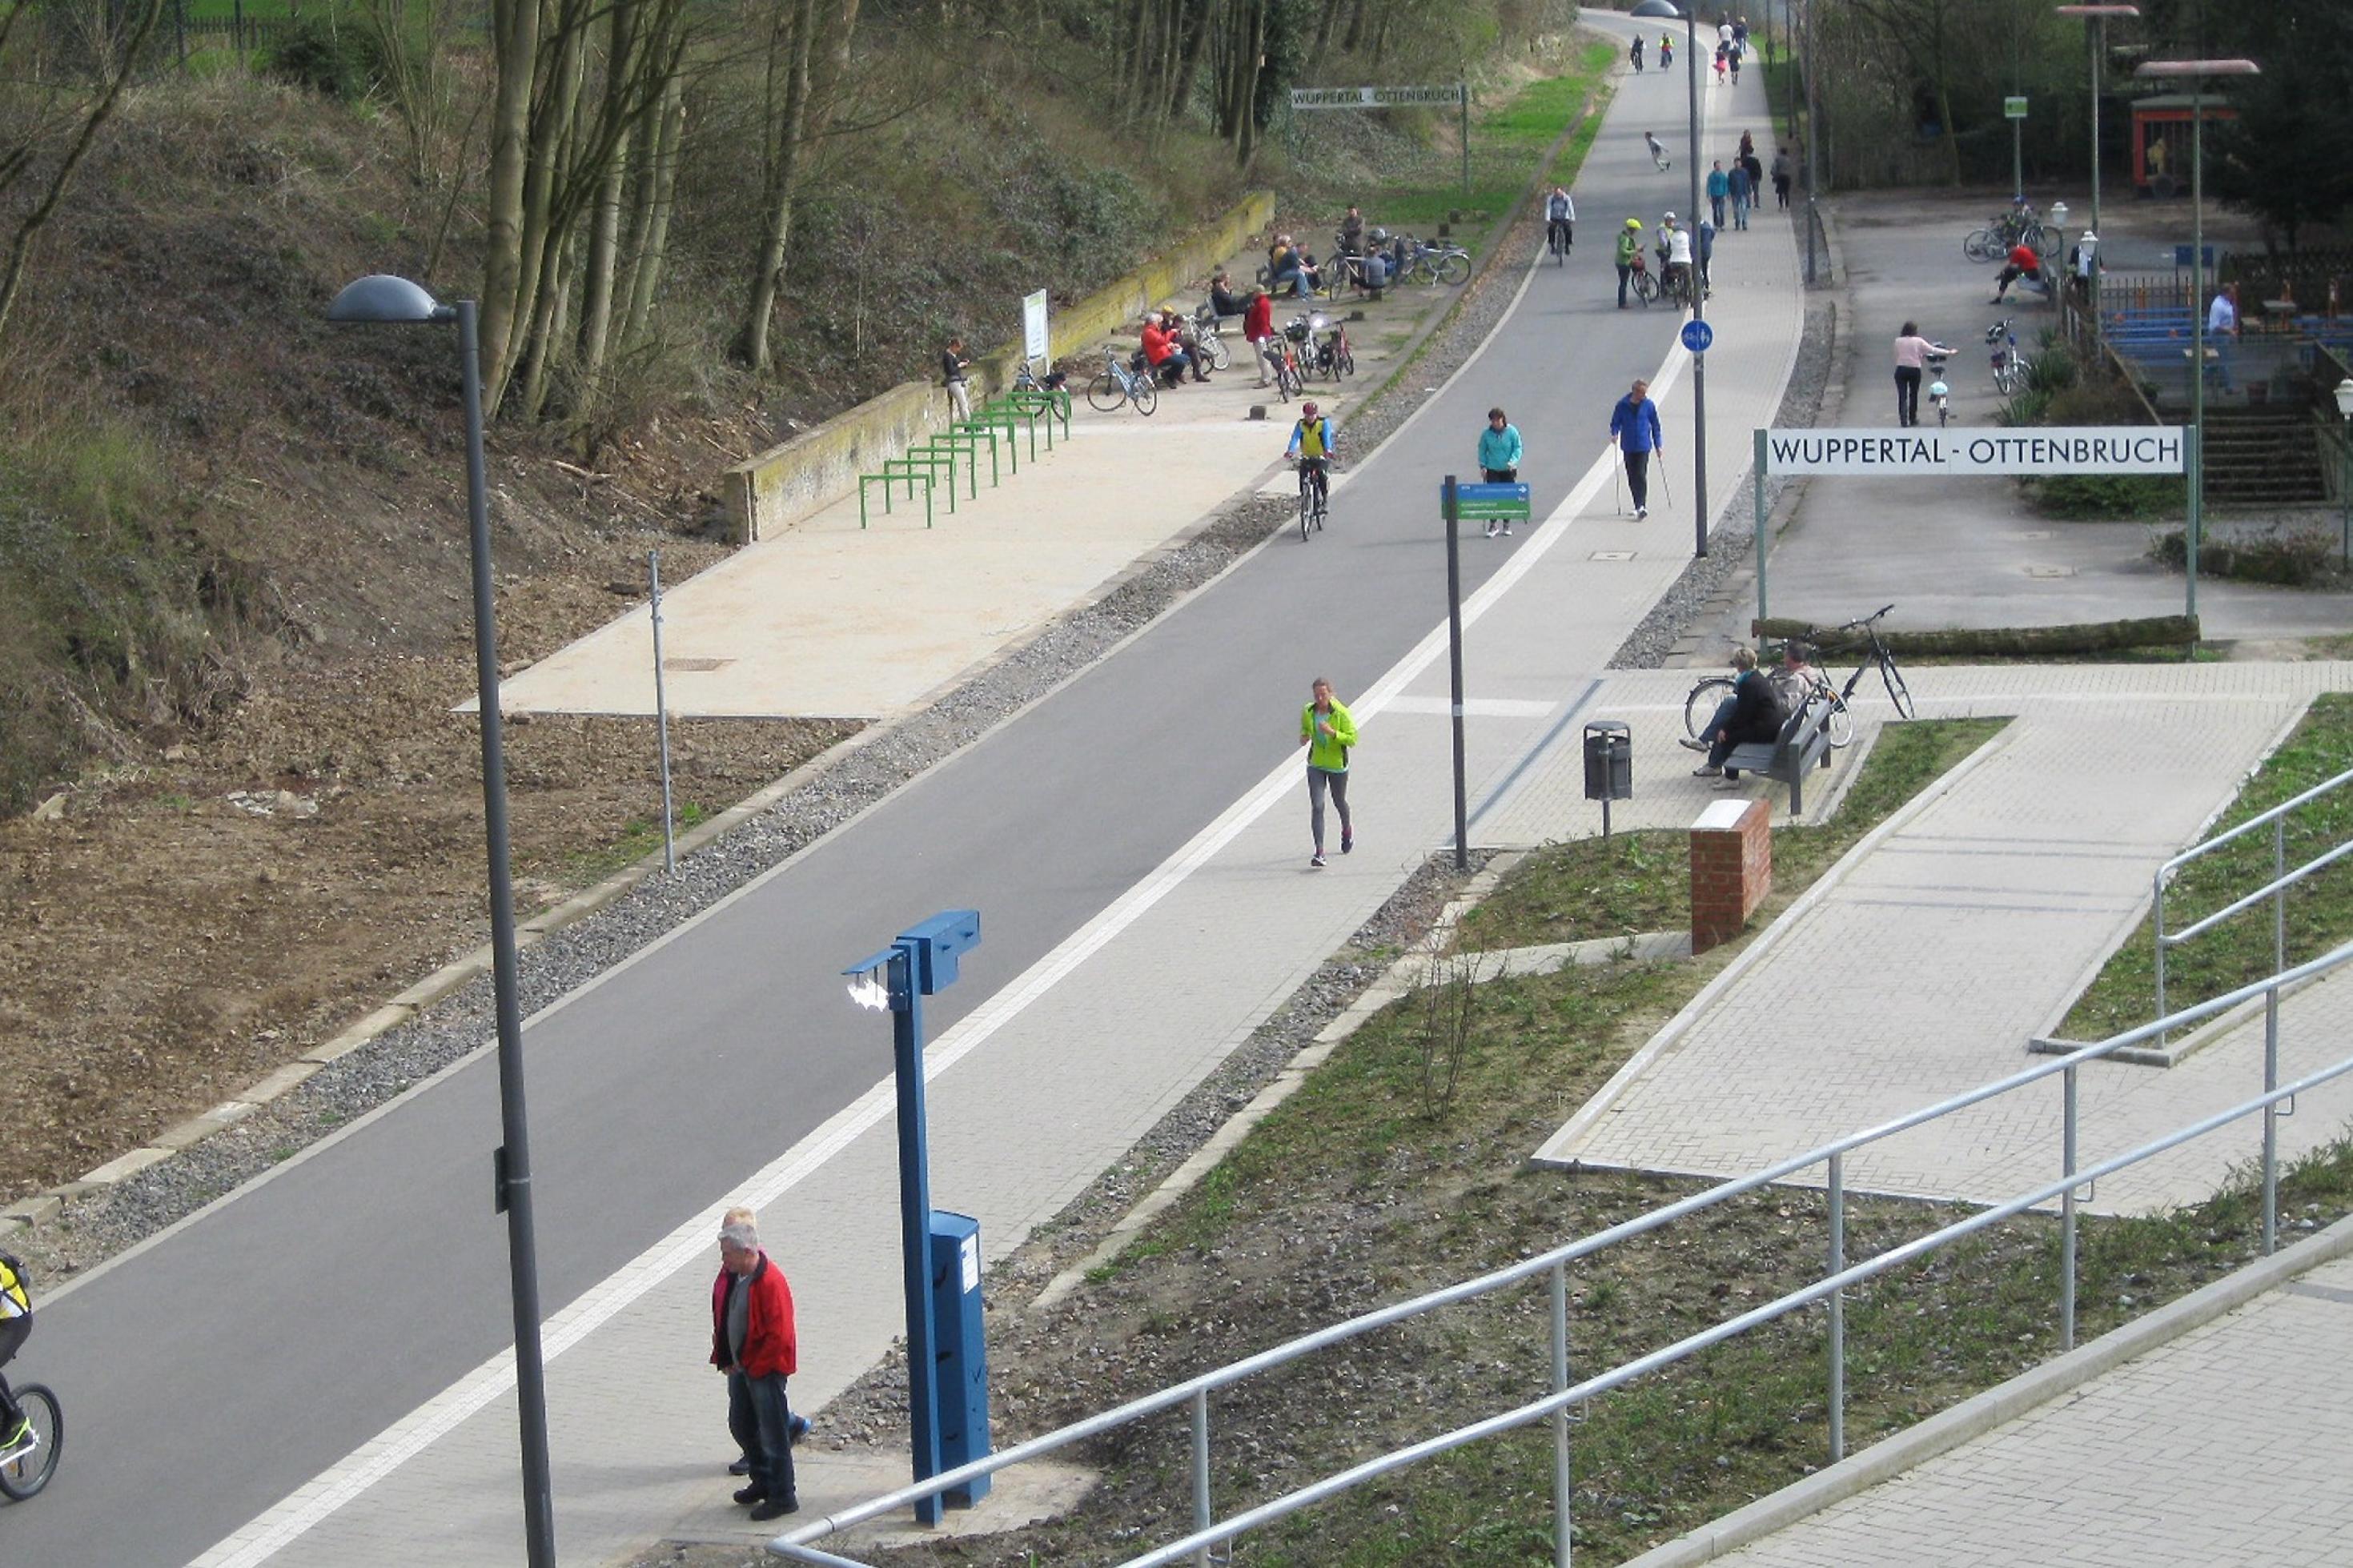 Fuß- und Radweg vor der Station Wuppertal-Ottenbruch. Wenige Menschen sind unterwegs.